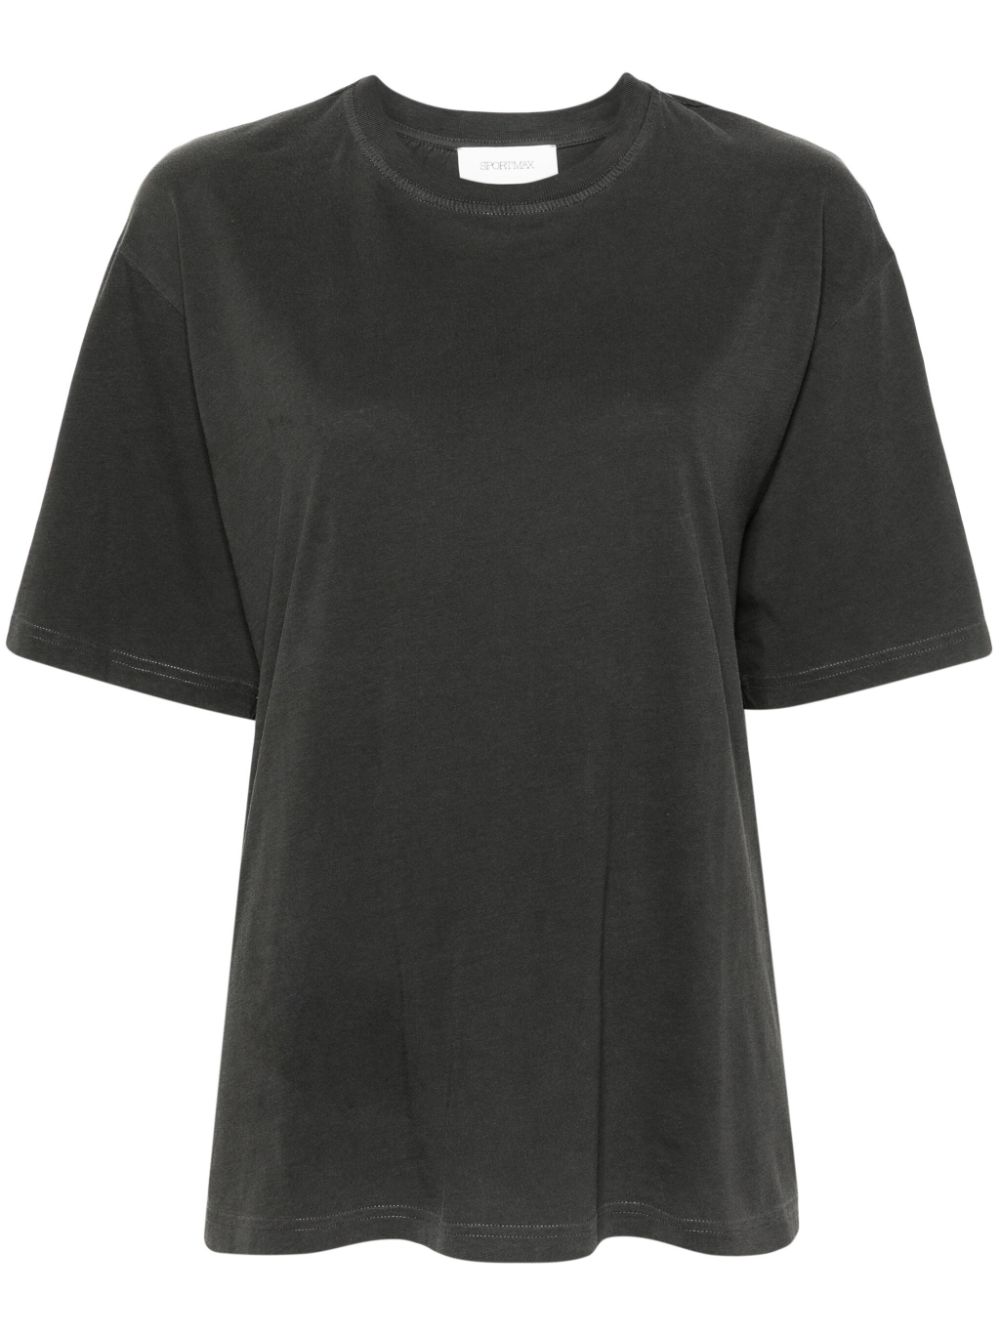 sportmax t-shirt en coton à col rond - gris